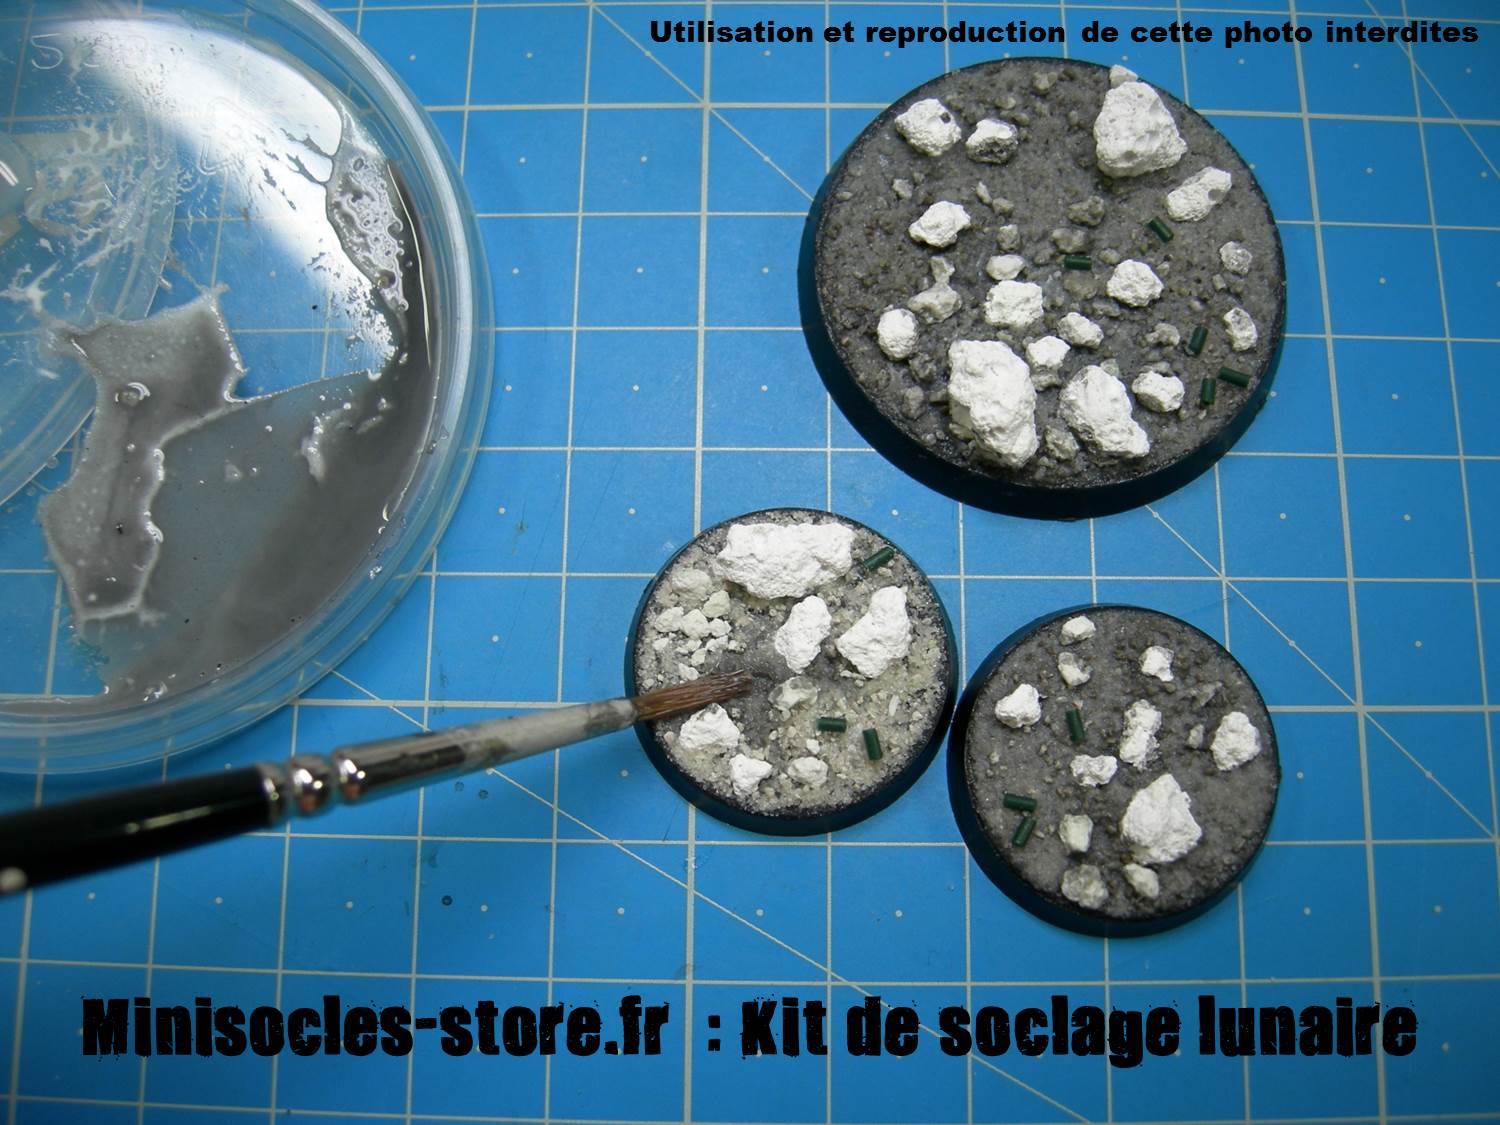 Kit de soclage lunaire - Minisocles-store